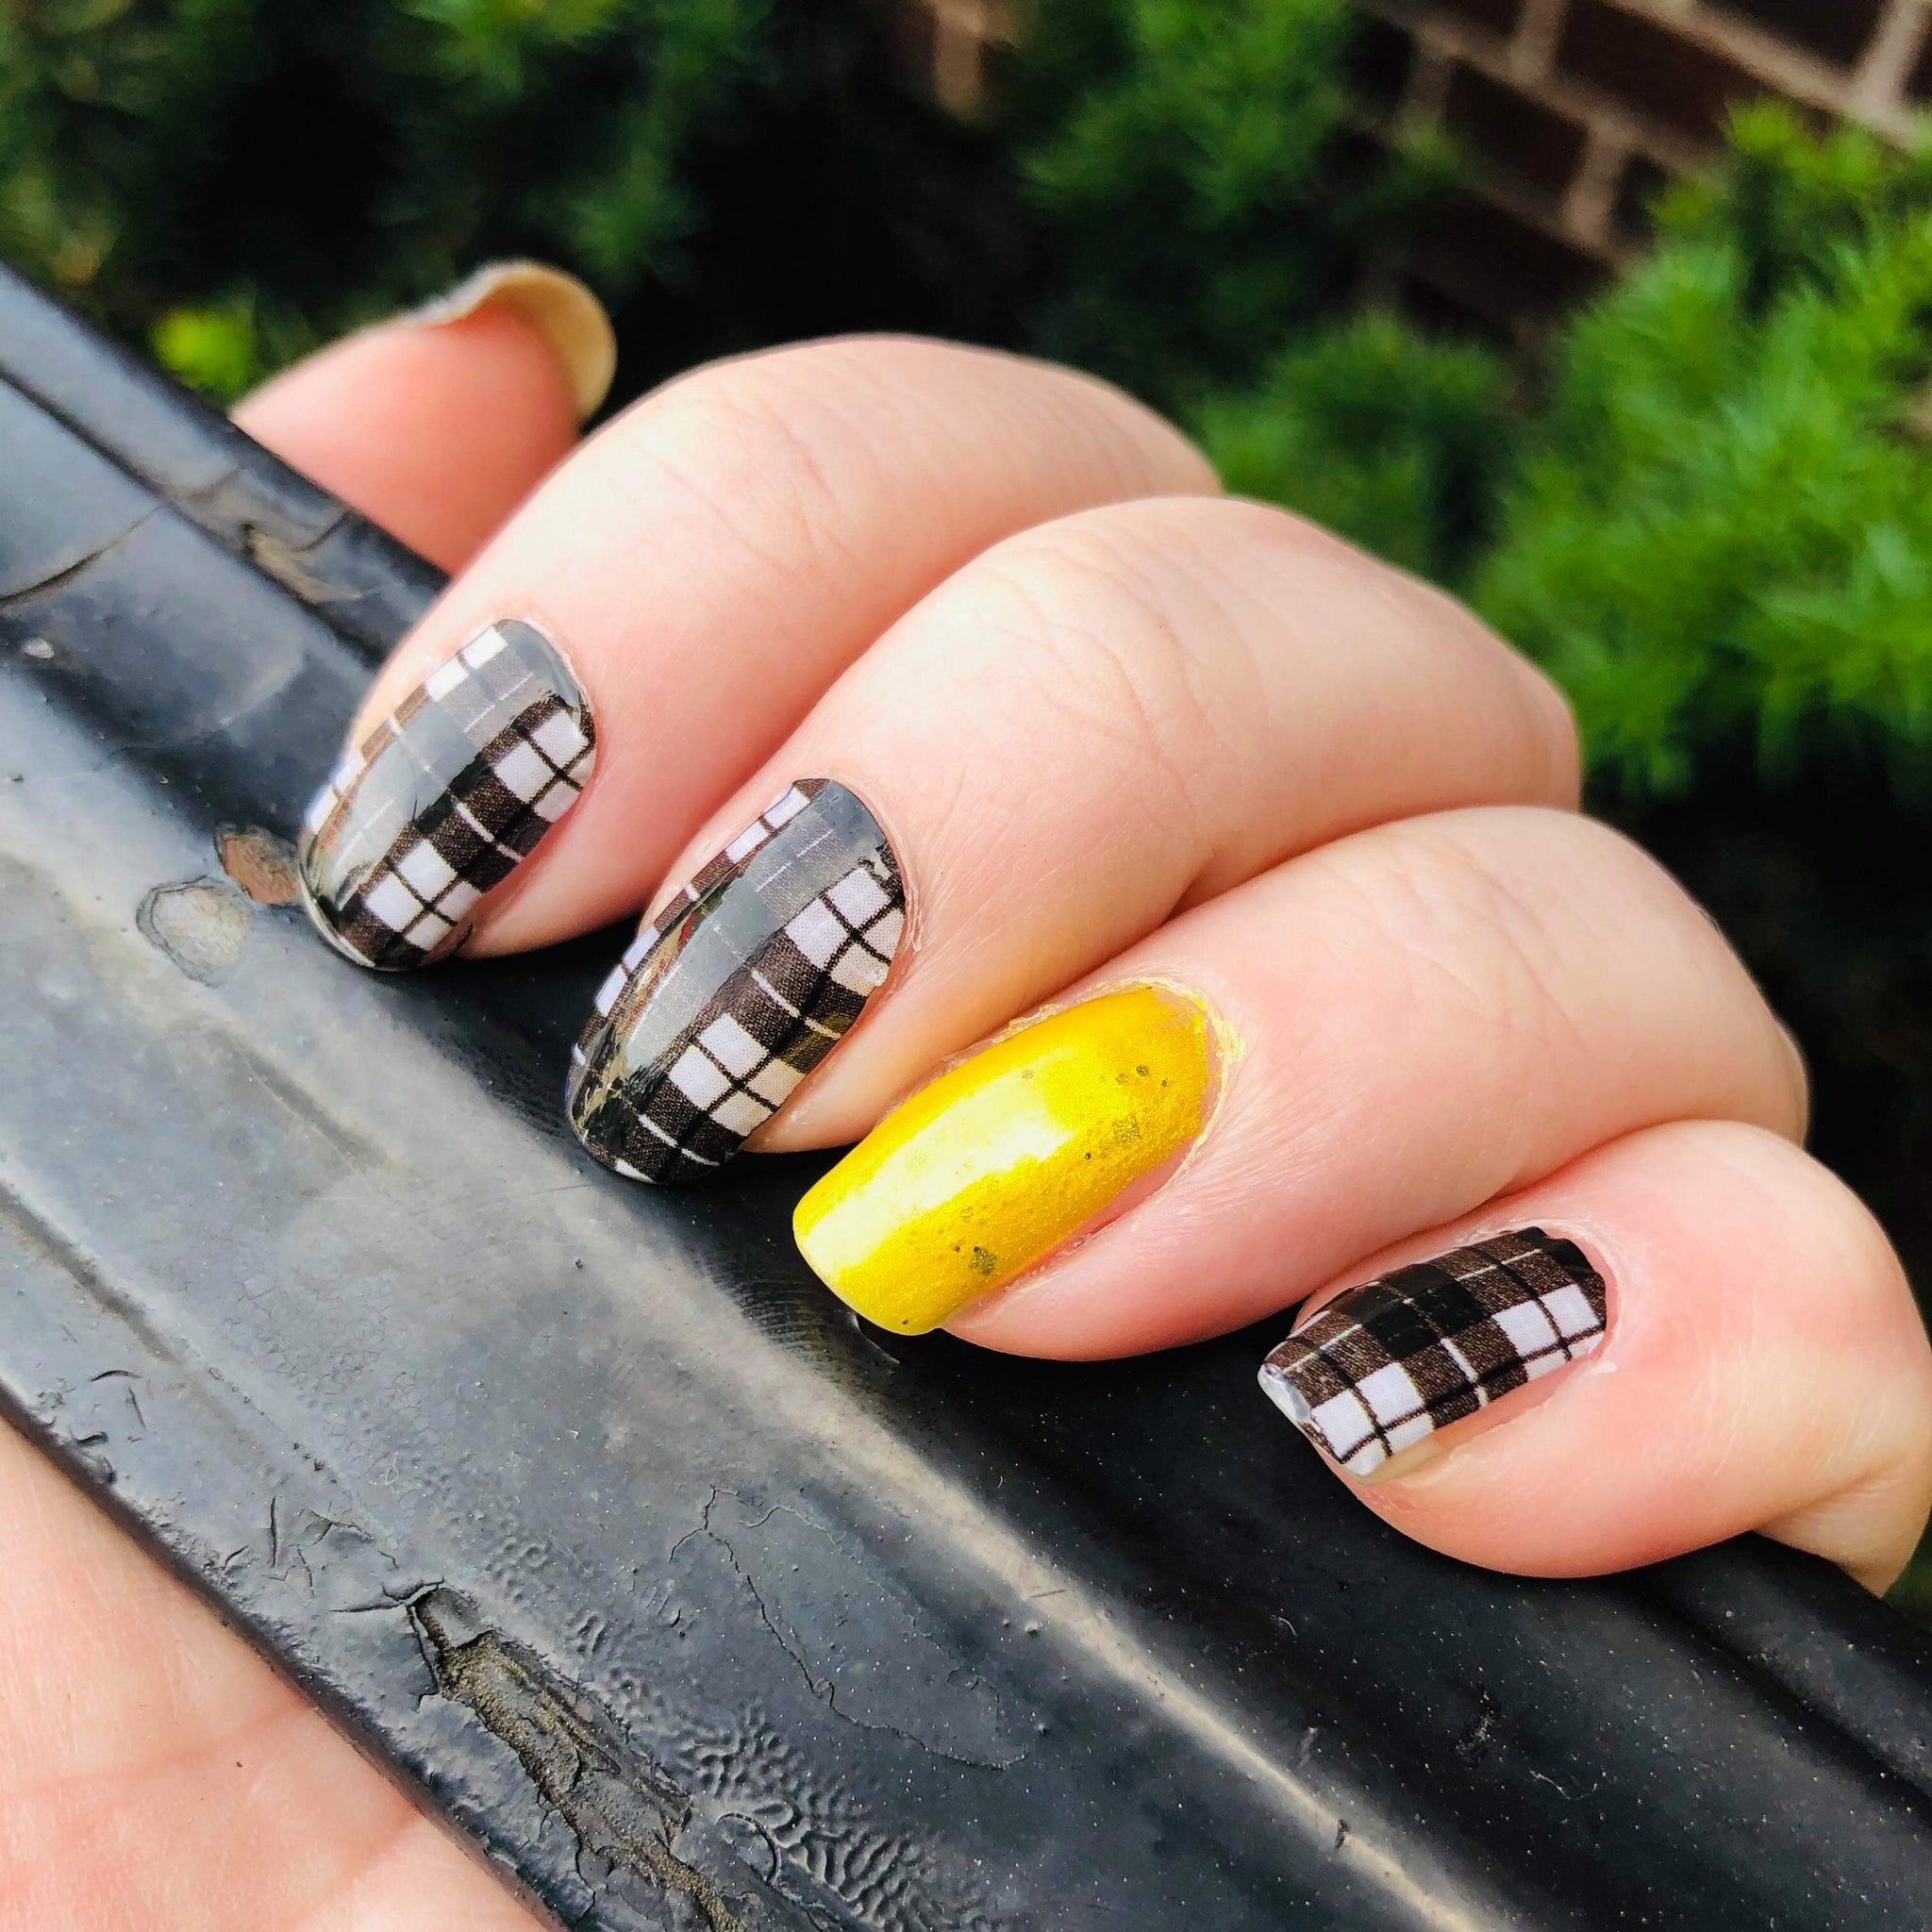 Cute plaid nail designs for autumn 2021 : Cinnamon Plaid Nails